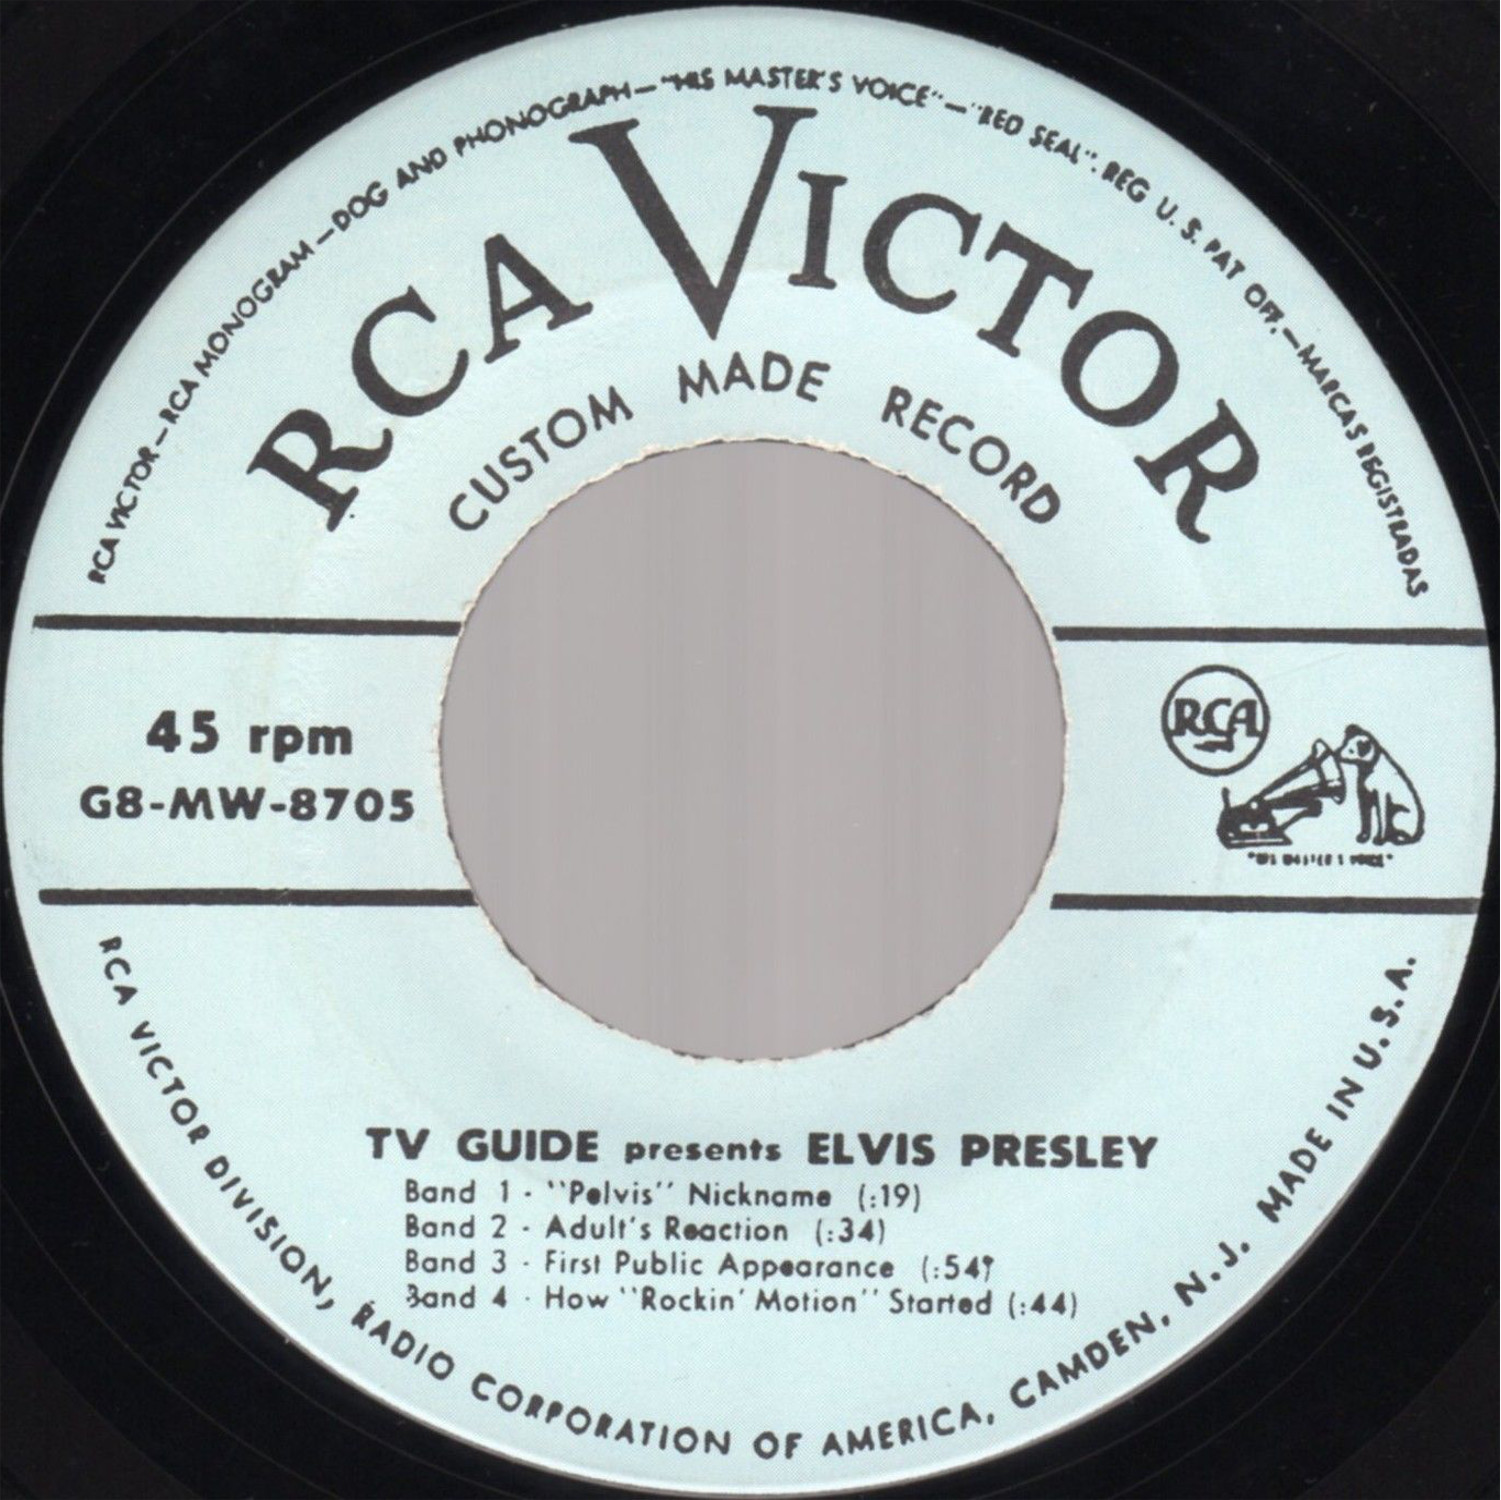 Presley - TV GUIDE PRESENTS ELVIS PRESLEY G8mw-8705cjzjgy